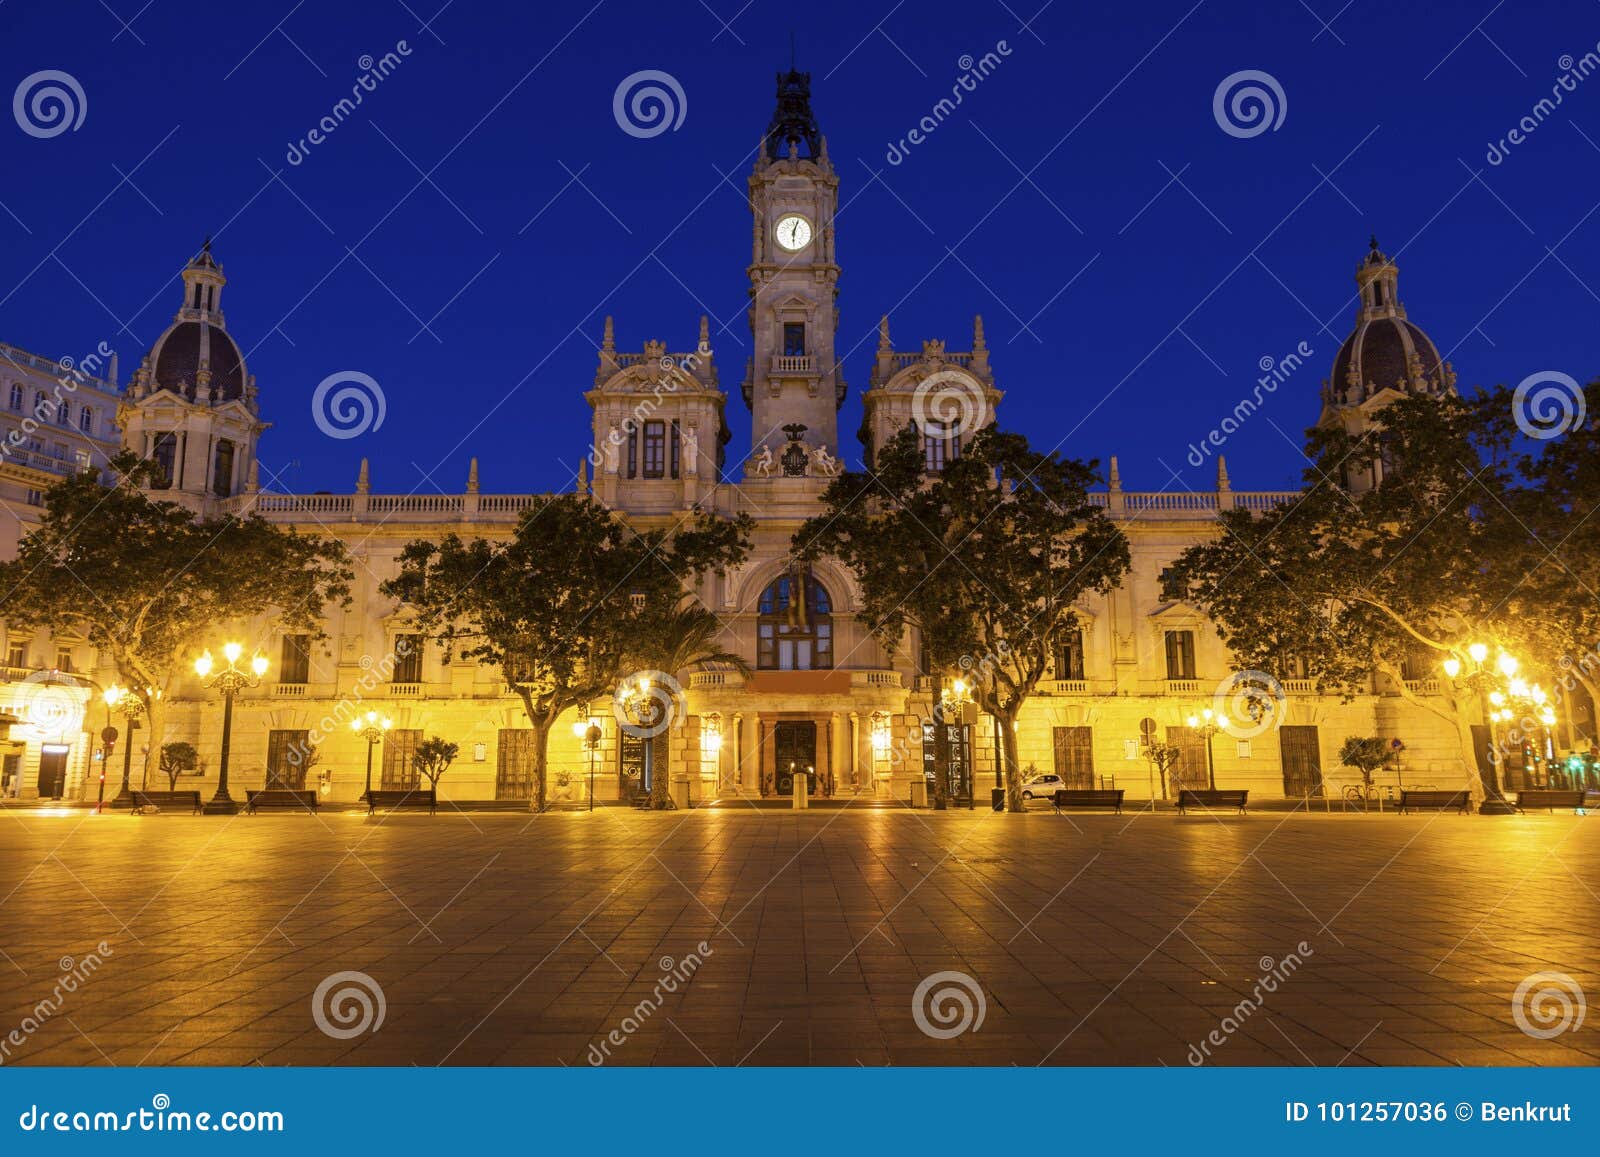 valencia city hall on plaza del ayuntamiento in valencia